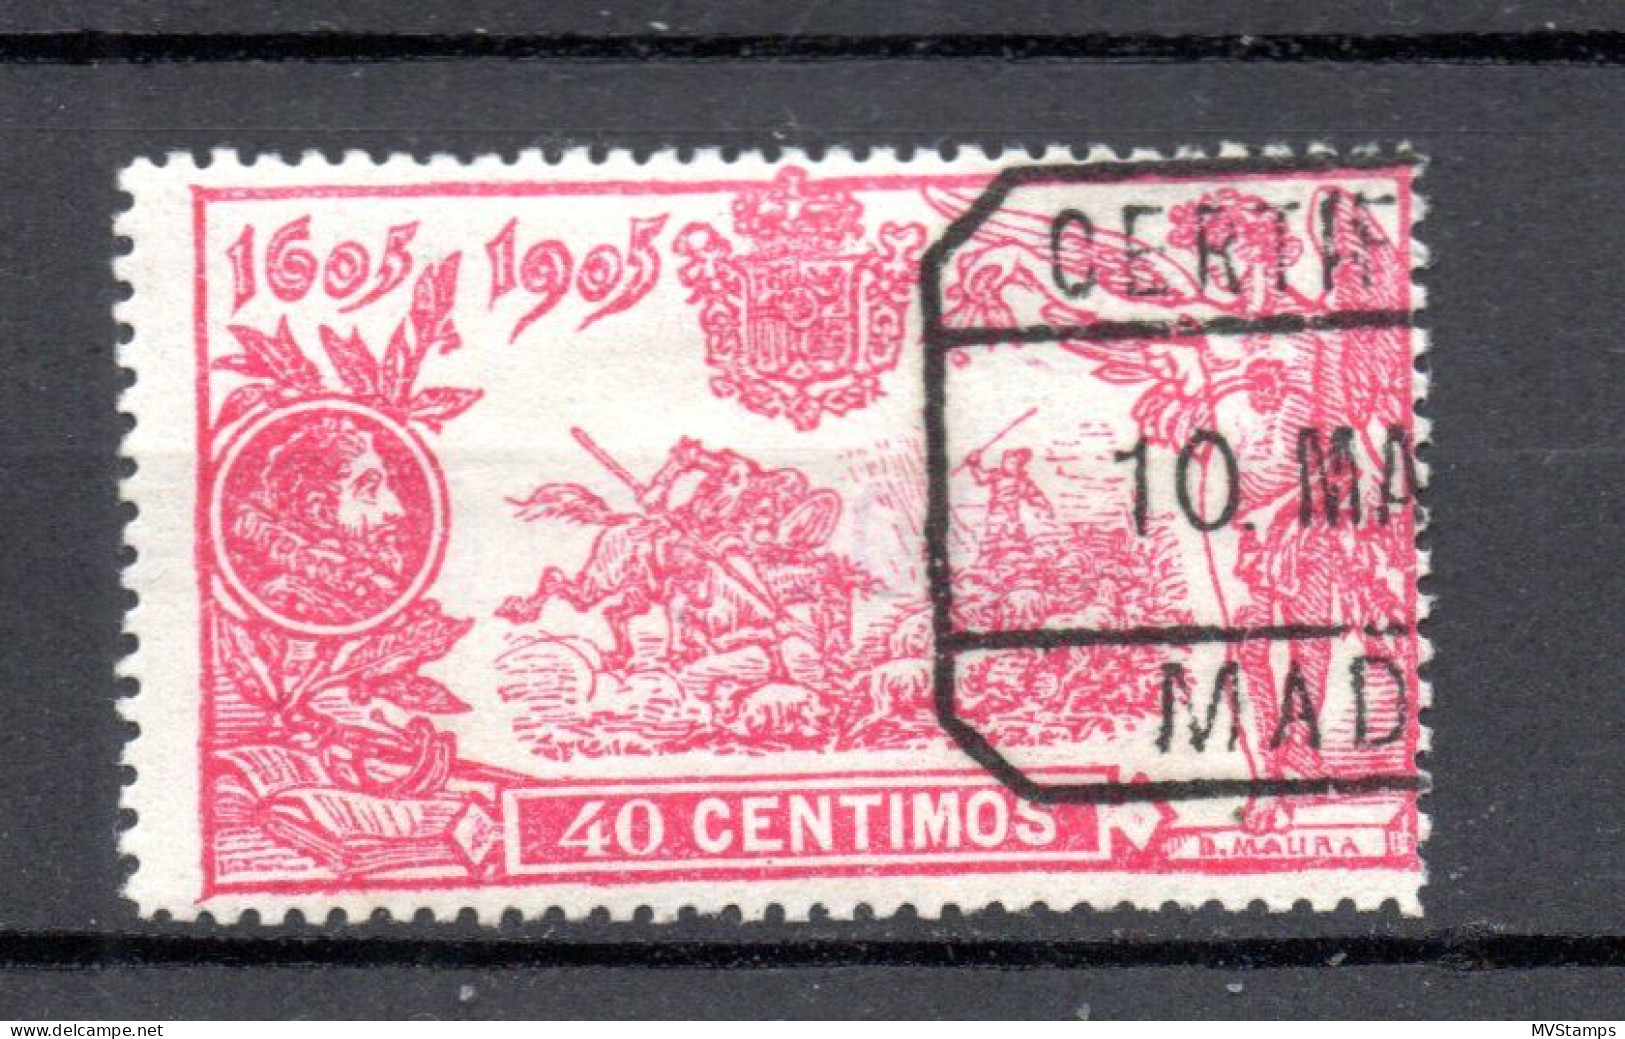 Spanien 1905 Freimarke 225 Don Quijote 40 Centimos Gebraucht - Oblitérés